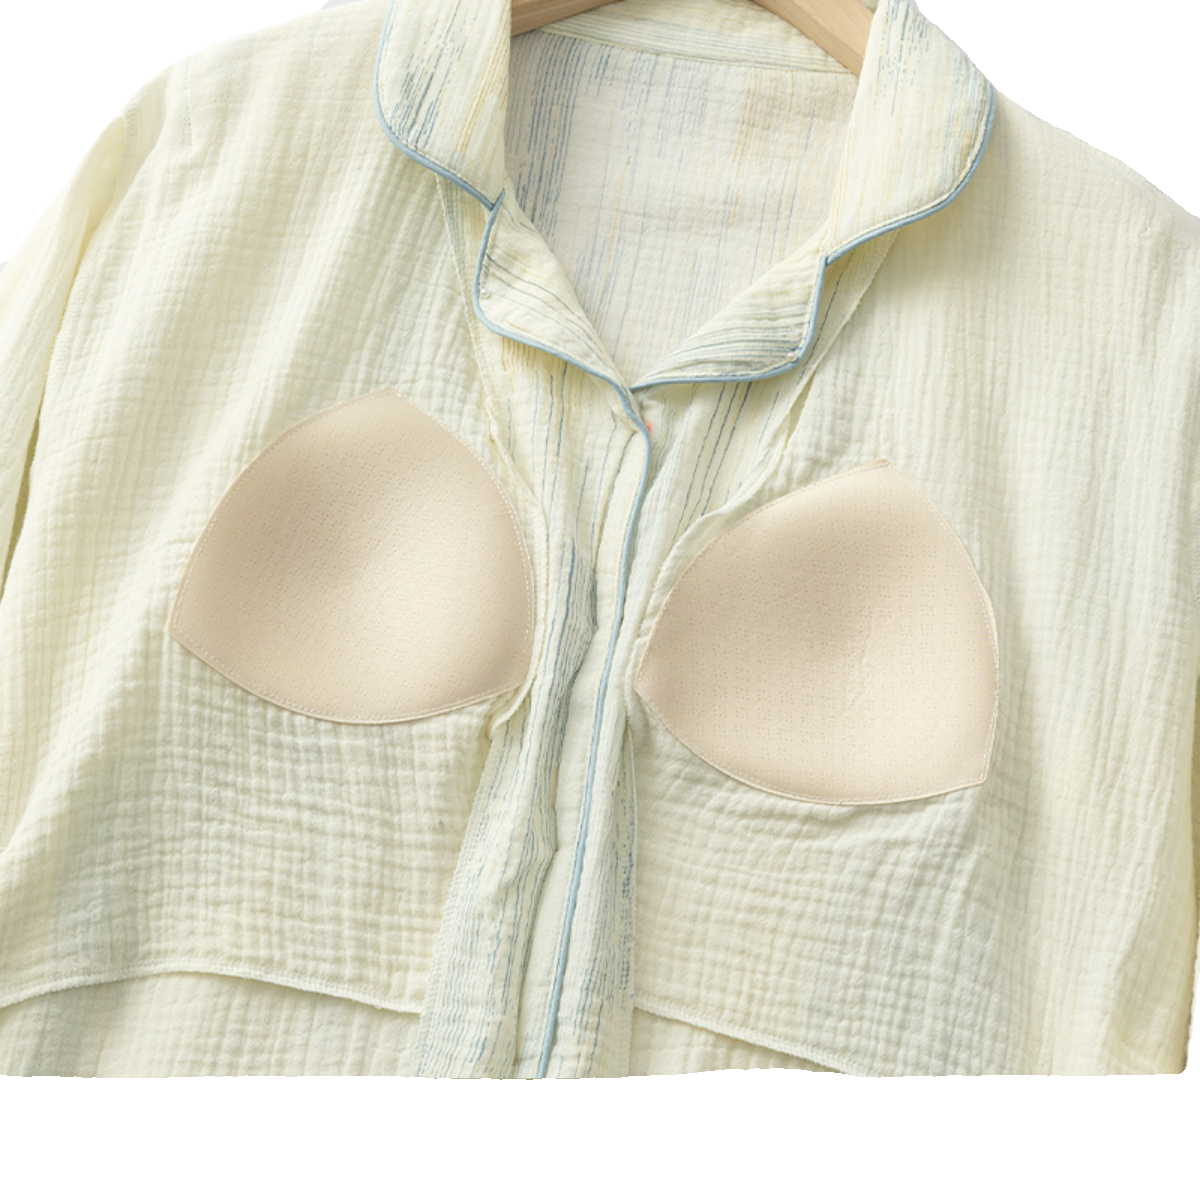 带胸垫纯棉纱布月子服春夏薄款产后产妇孕妇睡衣哺乳喂奶衣住院服